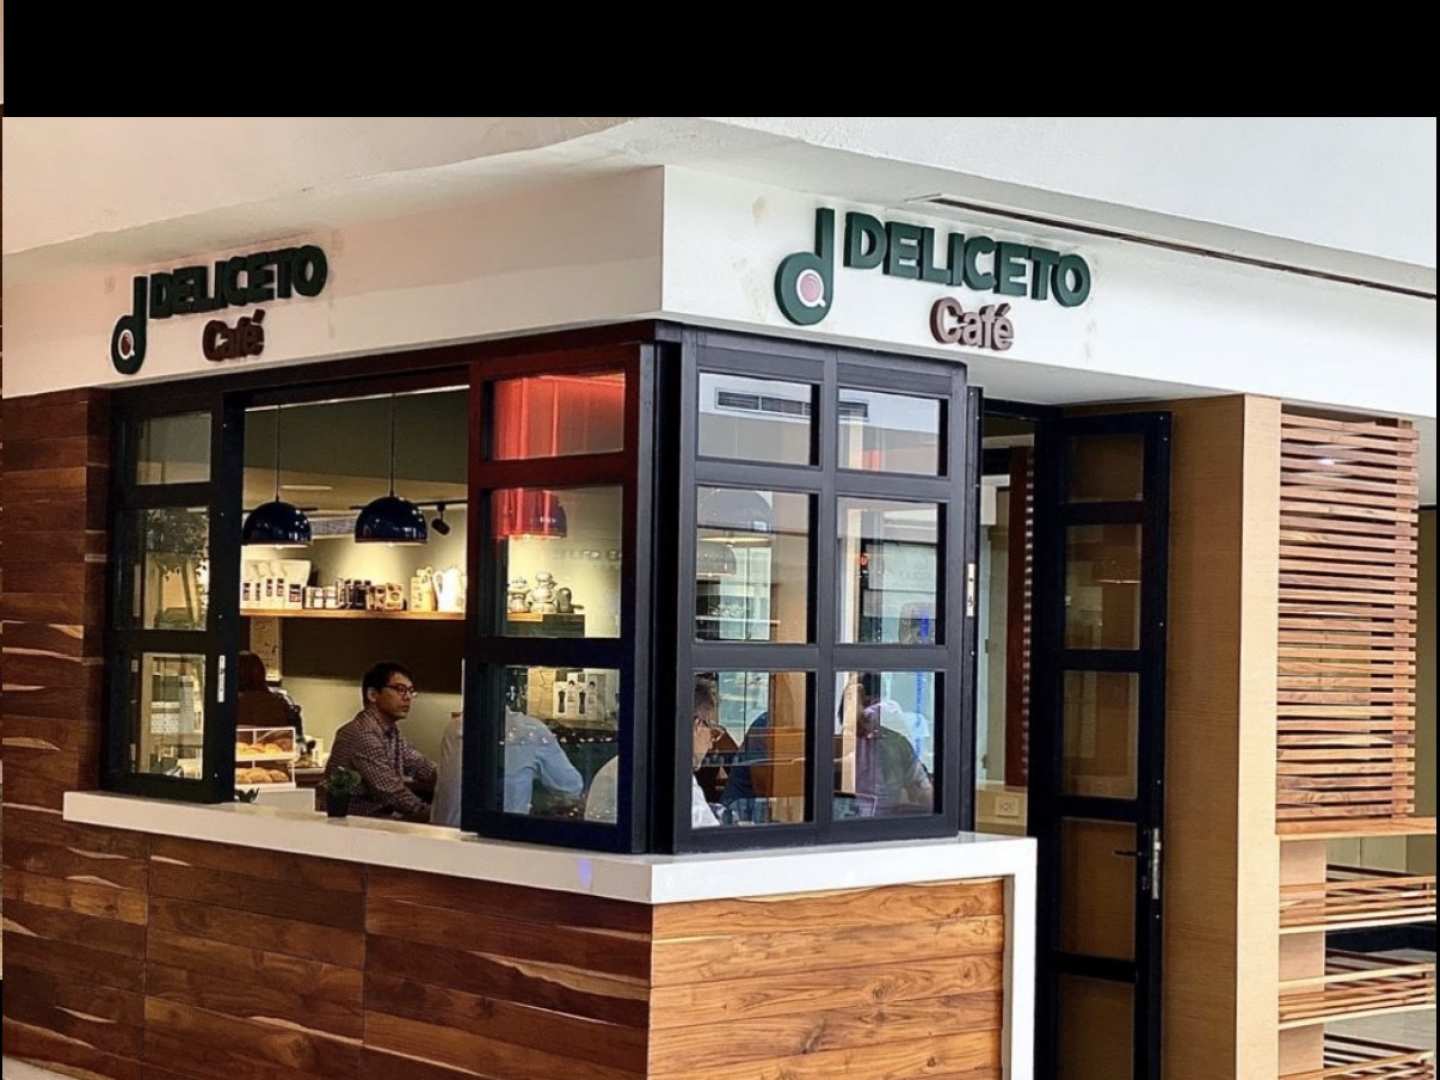 Deliceto Café